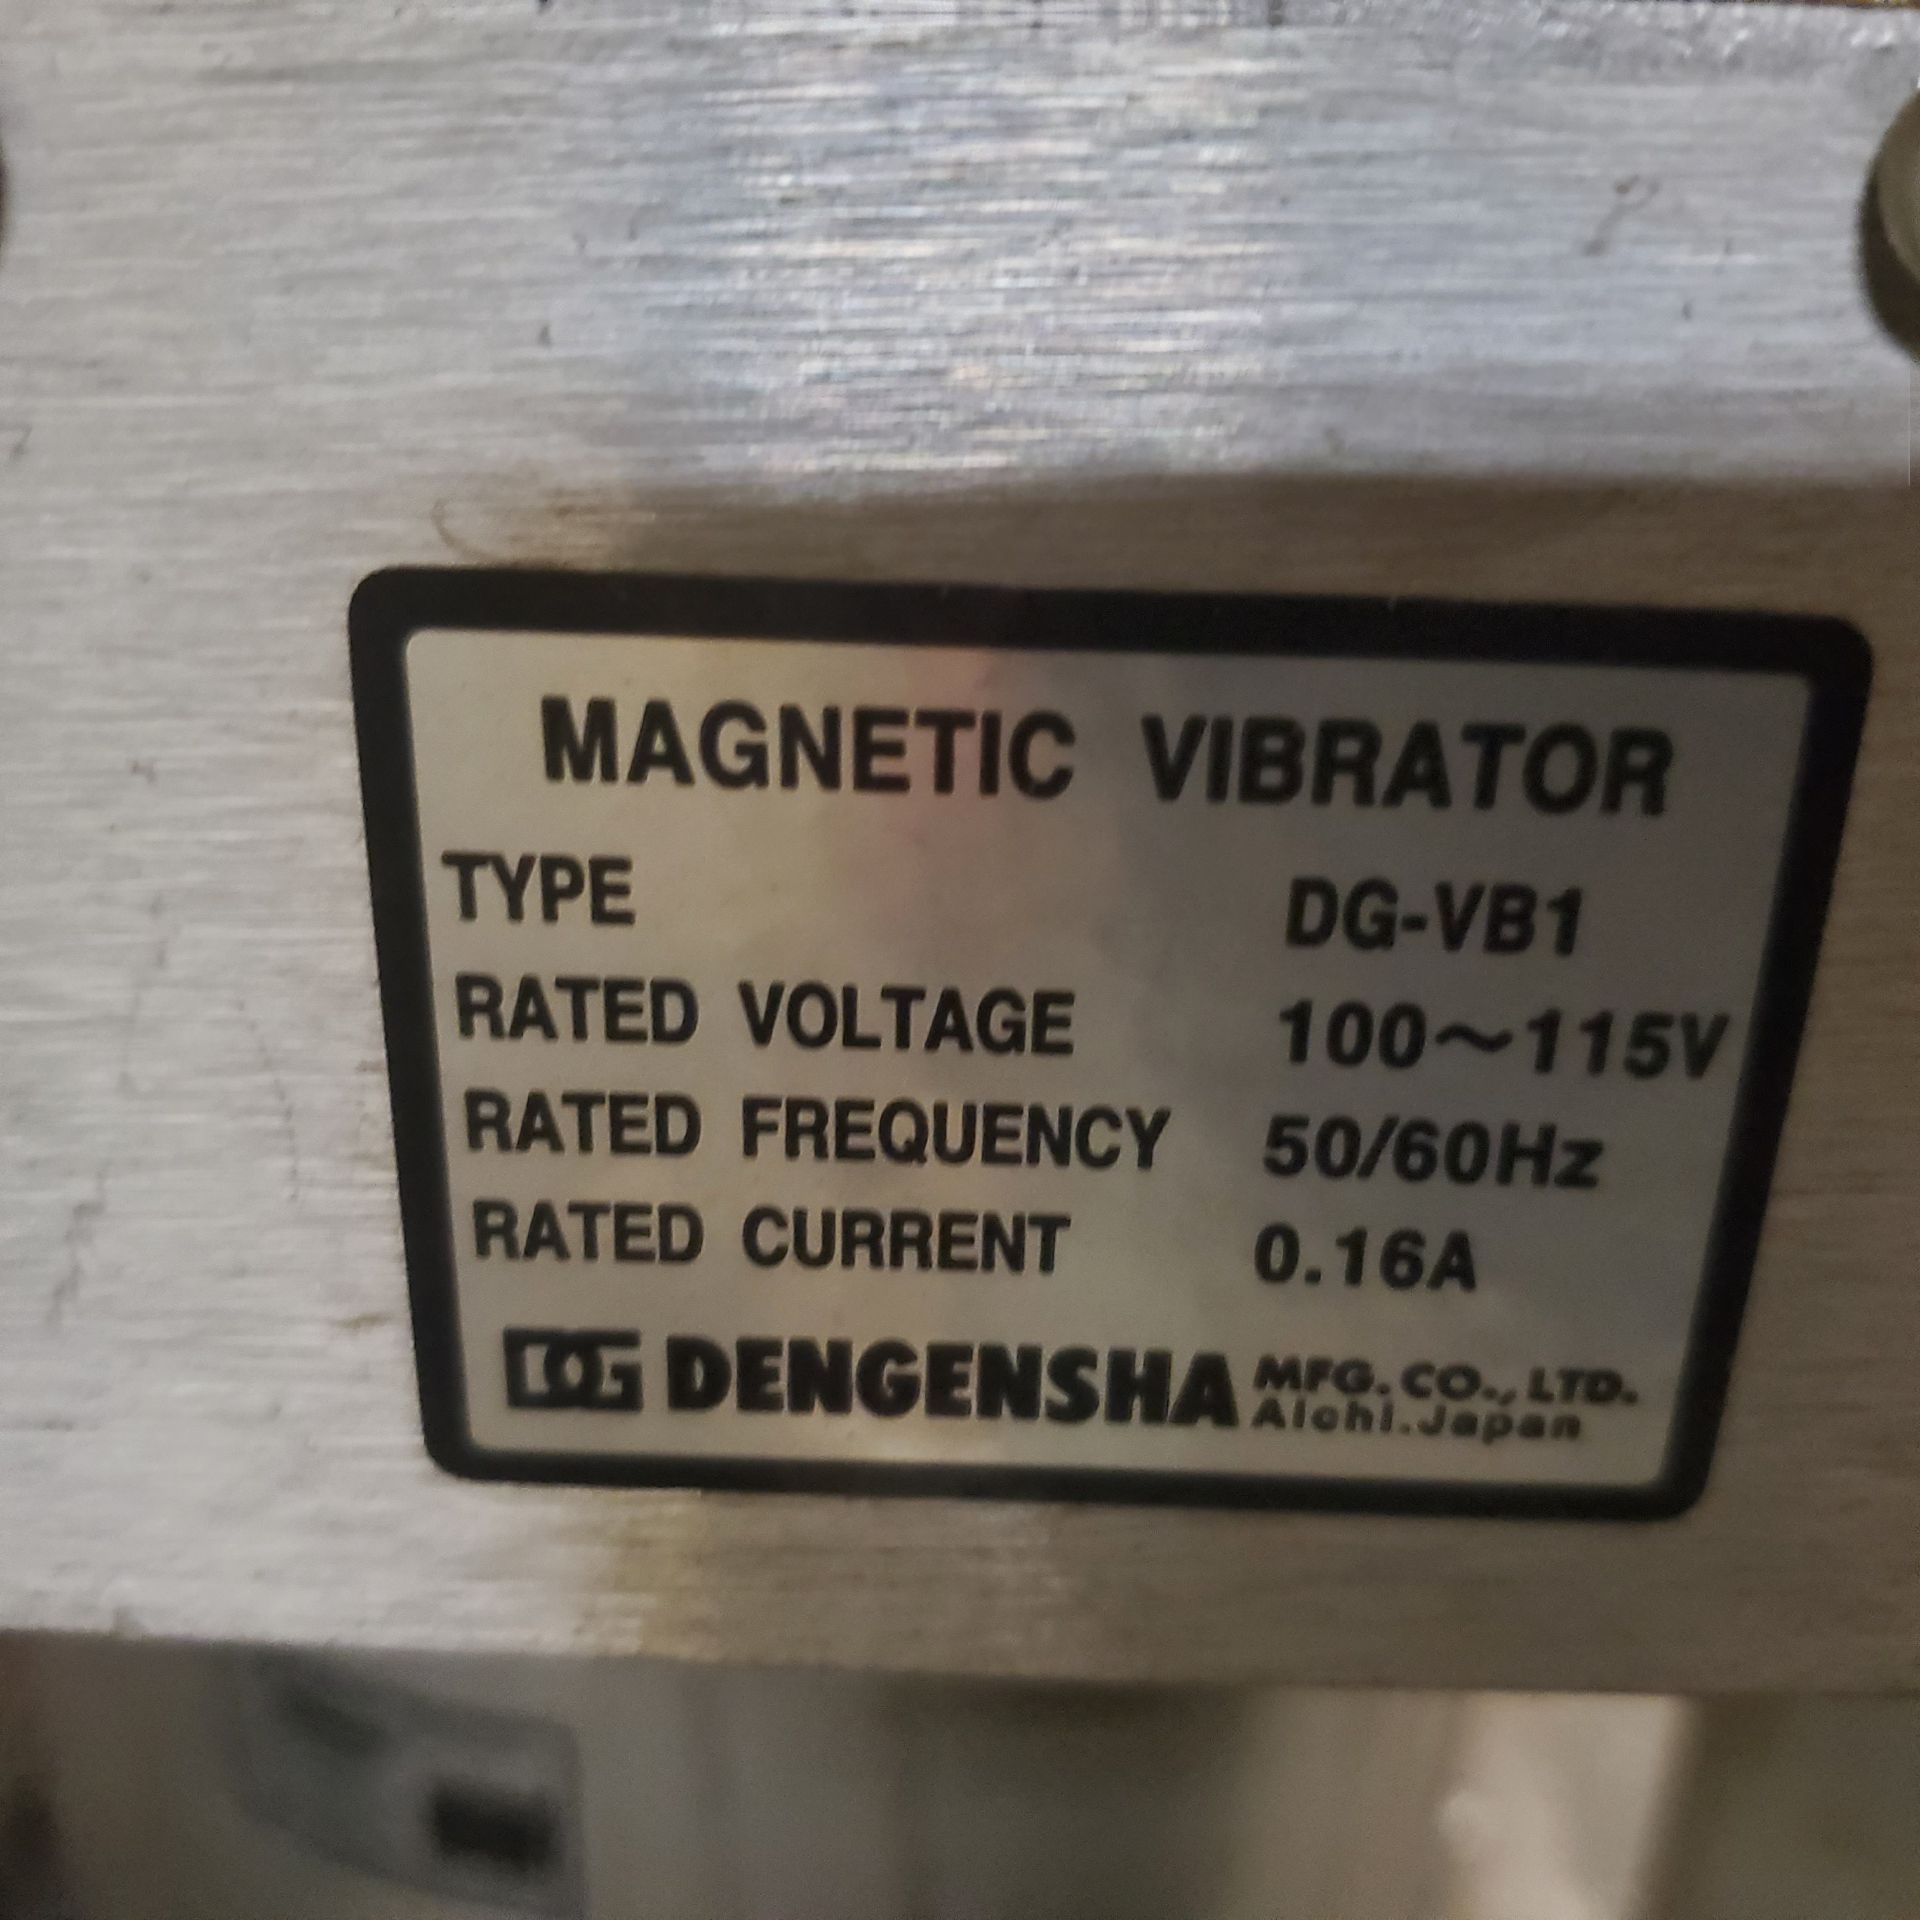 Dengensha Vibratory Parts Feeder Model AF-VNS-S6-DLH w/ 12" Vibratory Feeder Bowl Type DG-VB1, 110 - Image 4 of 4